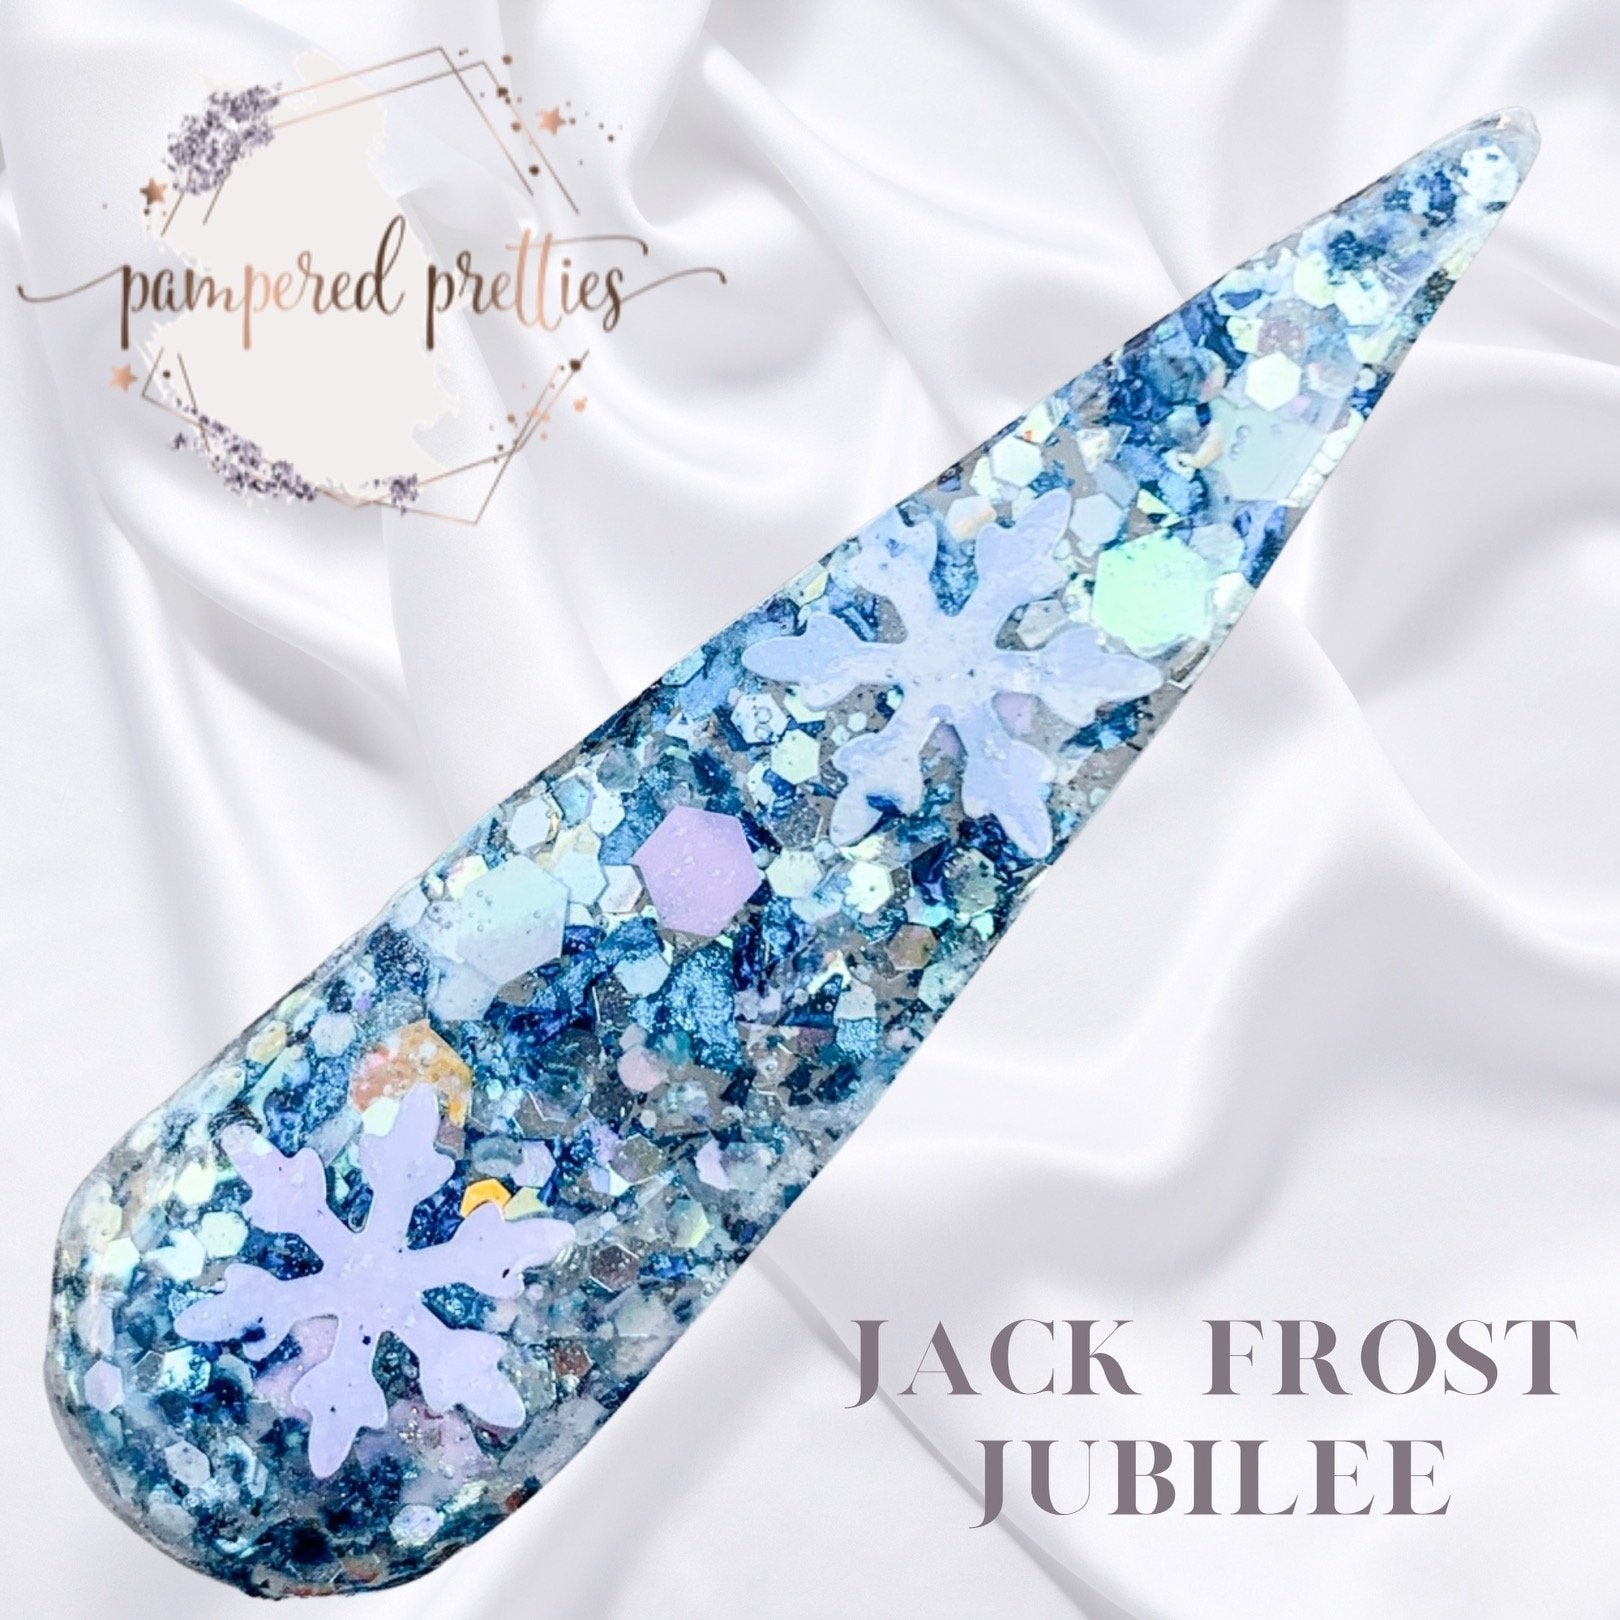 Jack Frost Jubilee - Pampered Pretties